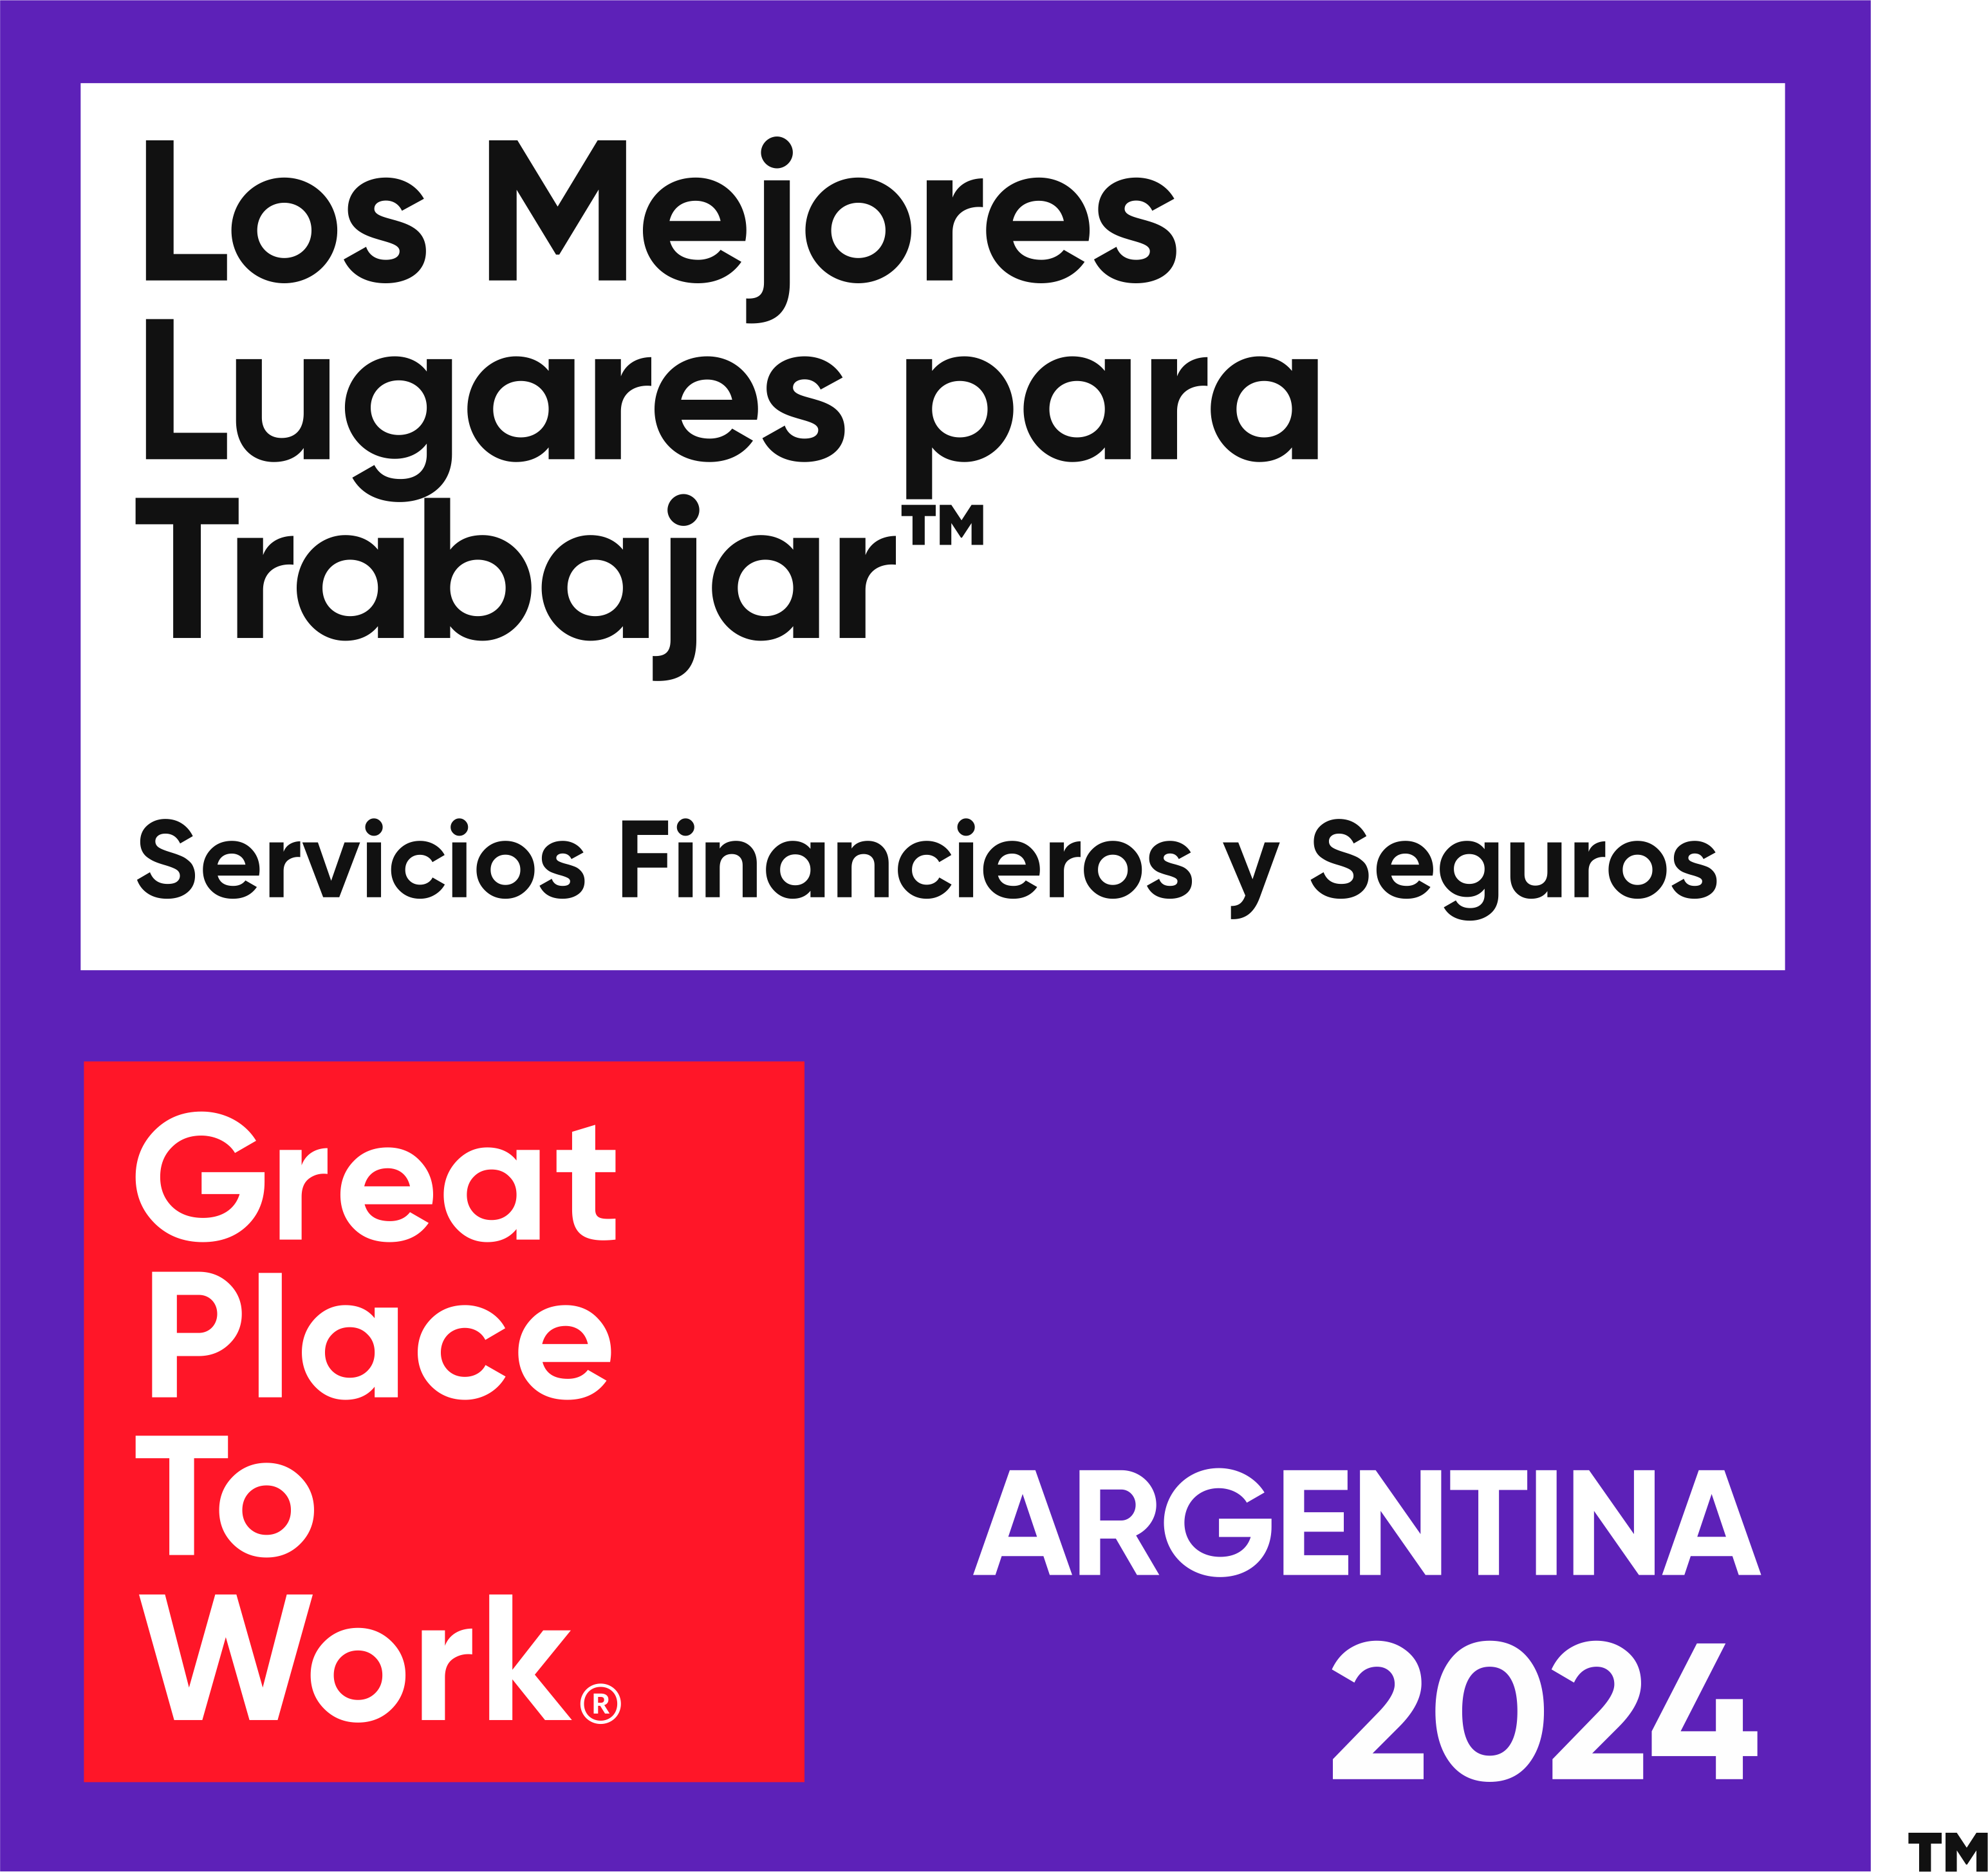 2023 ARGENTINA Los mejores lugares para trabajar